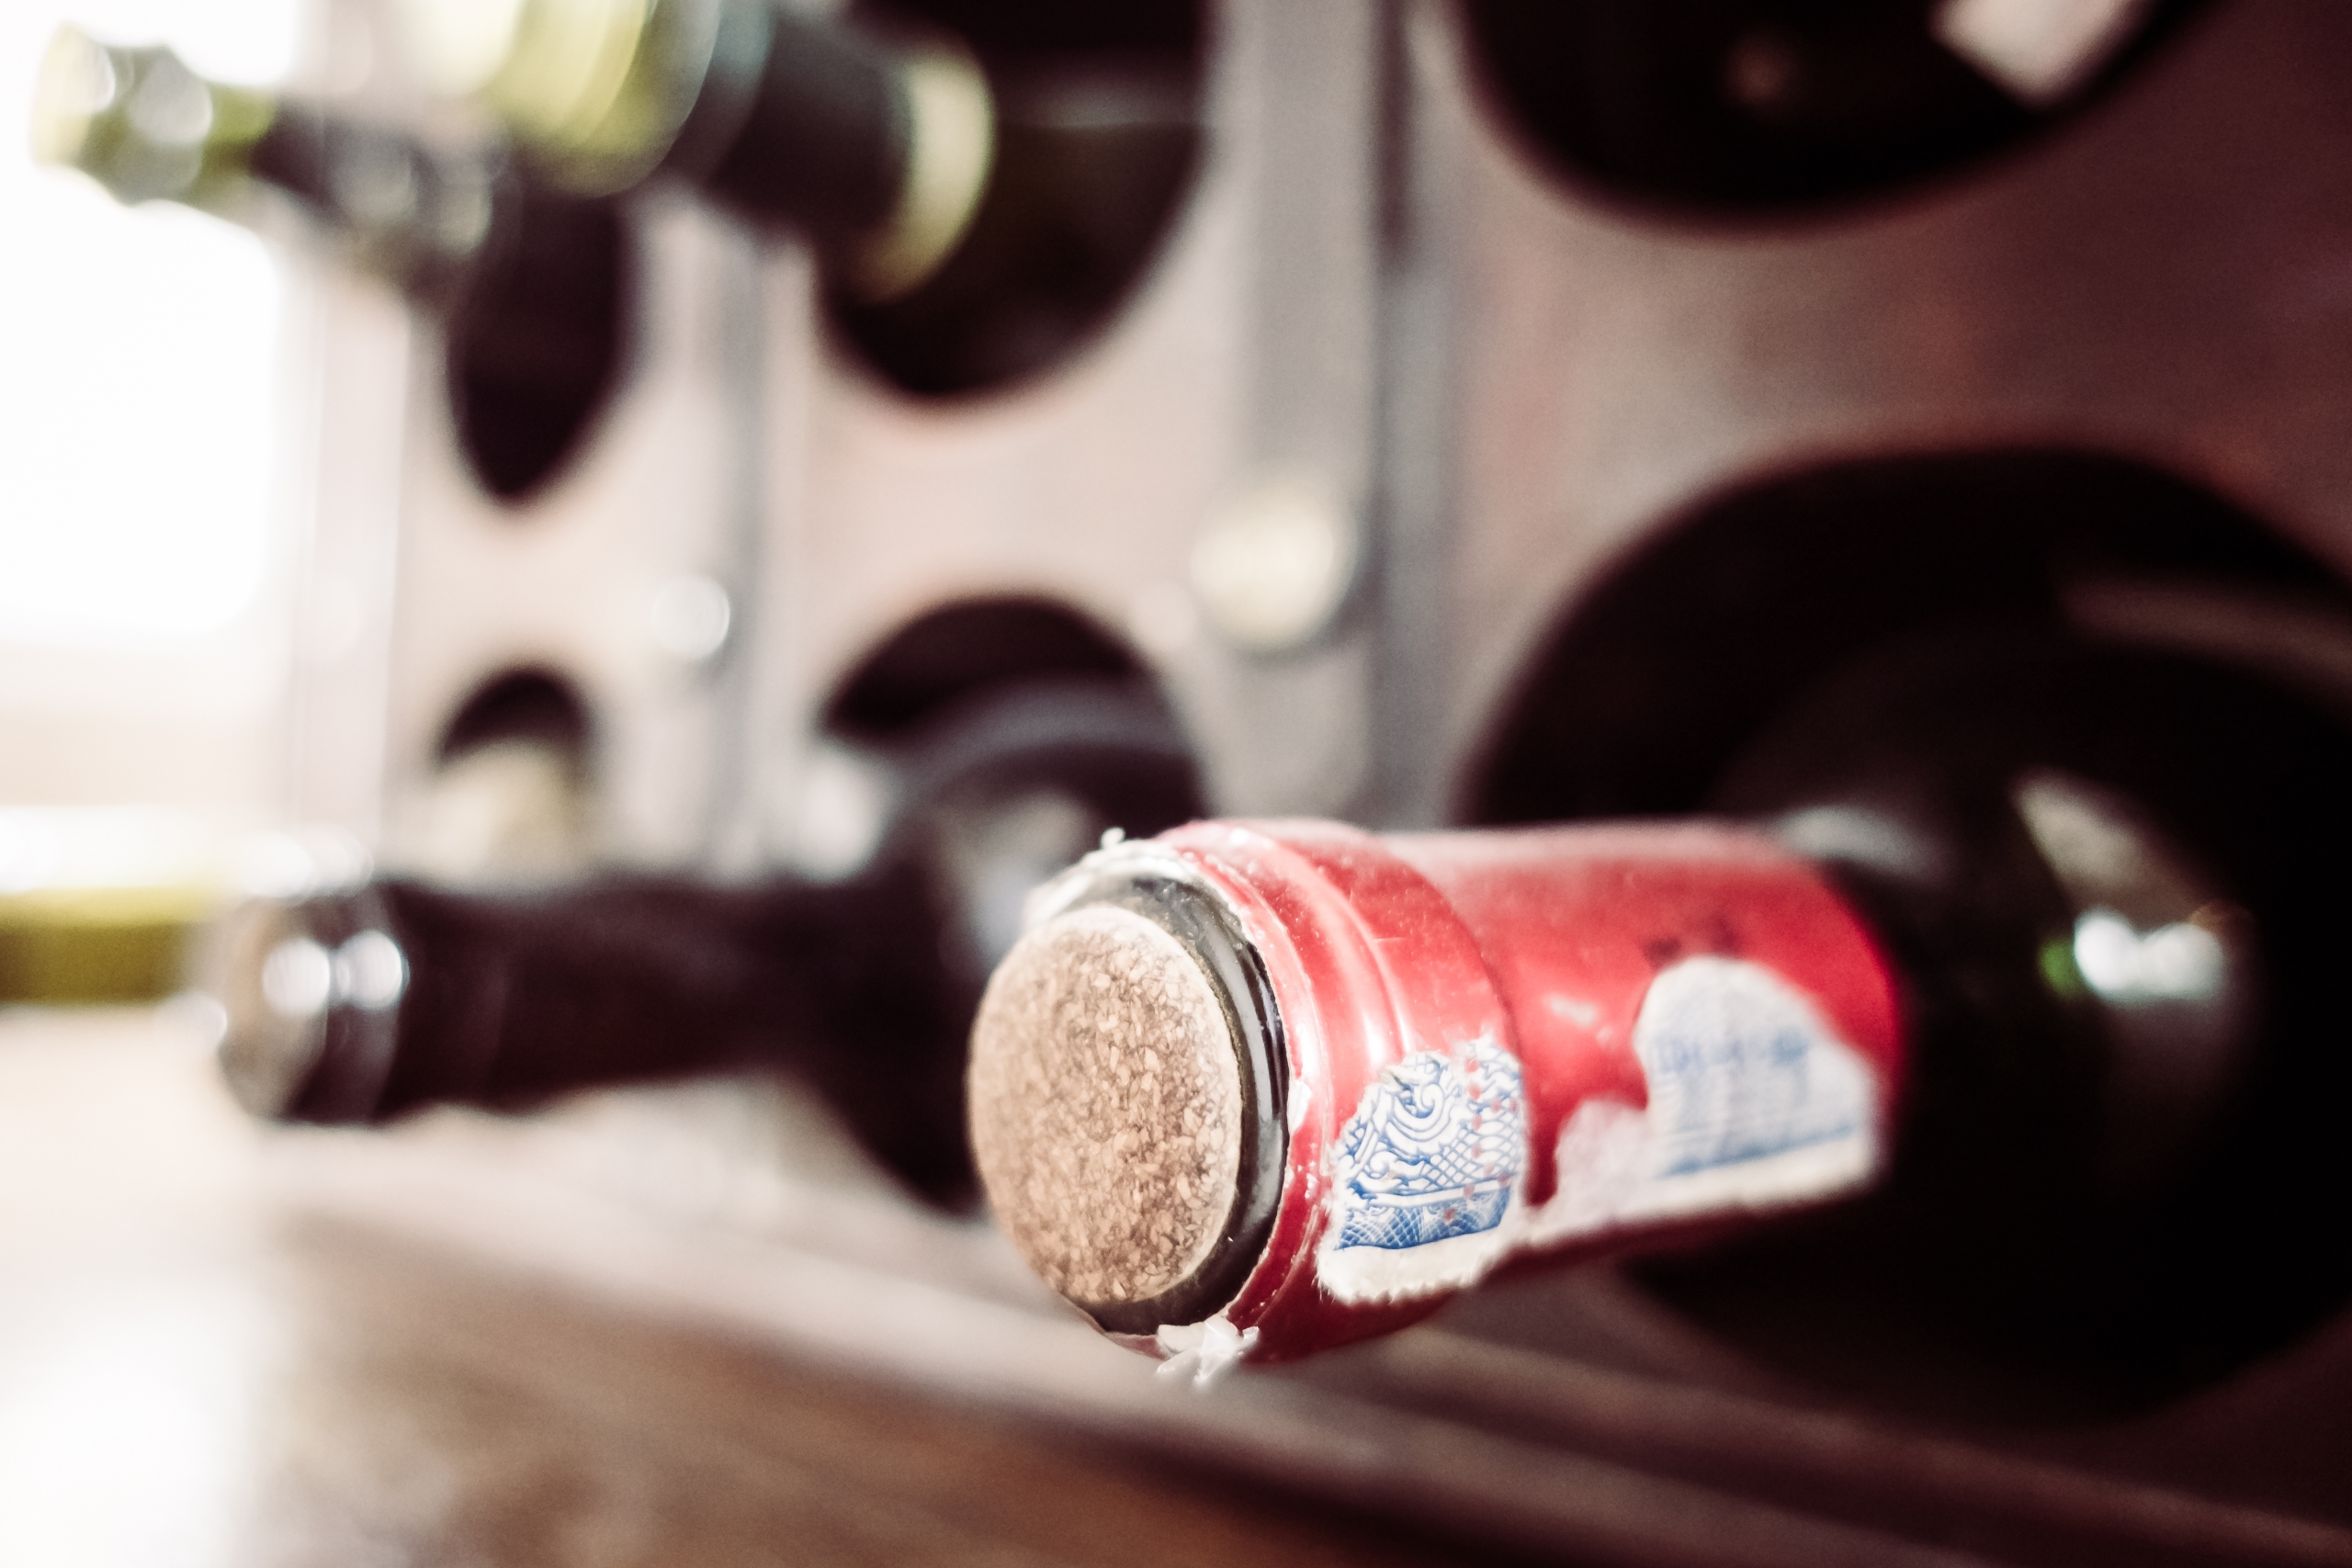 Vintage wine bottle